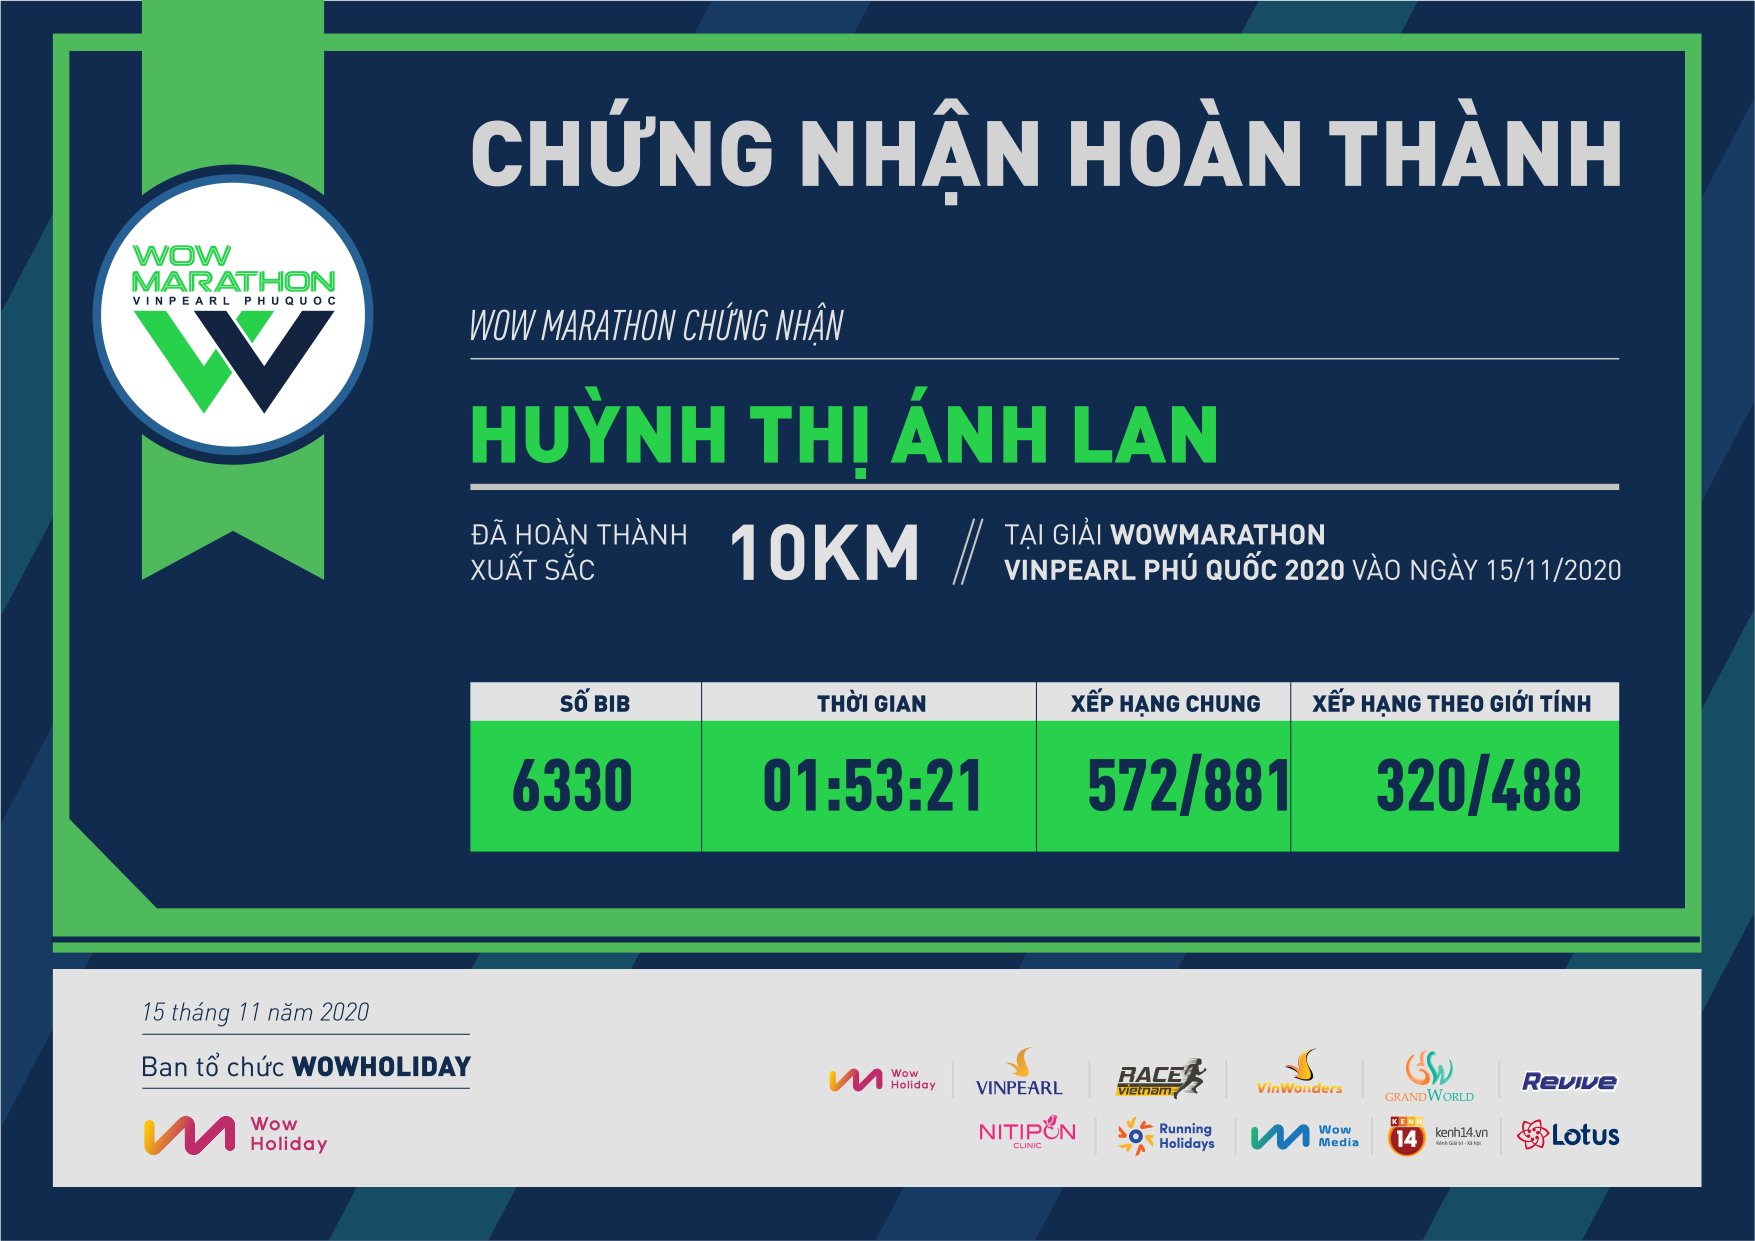 6330 - Huỳnh Thị Ánh Lan